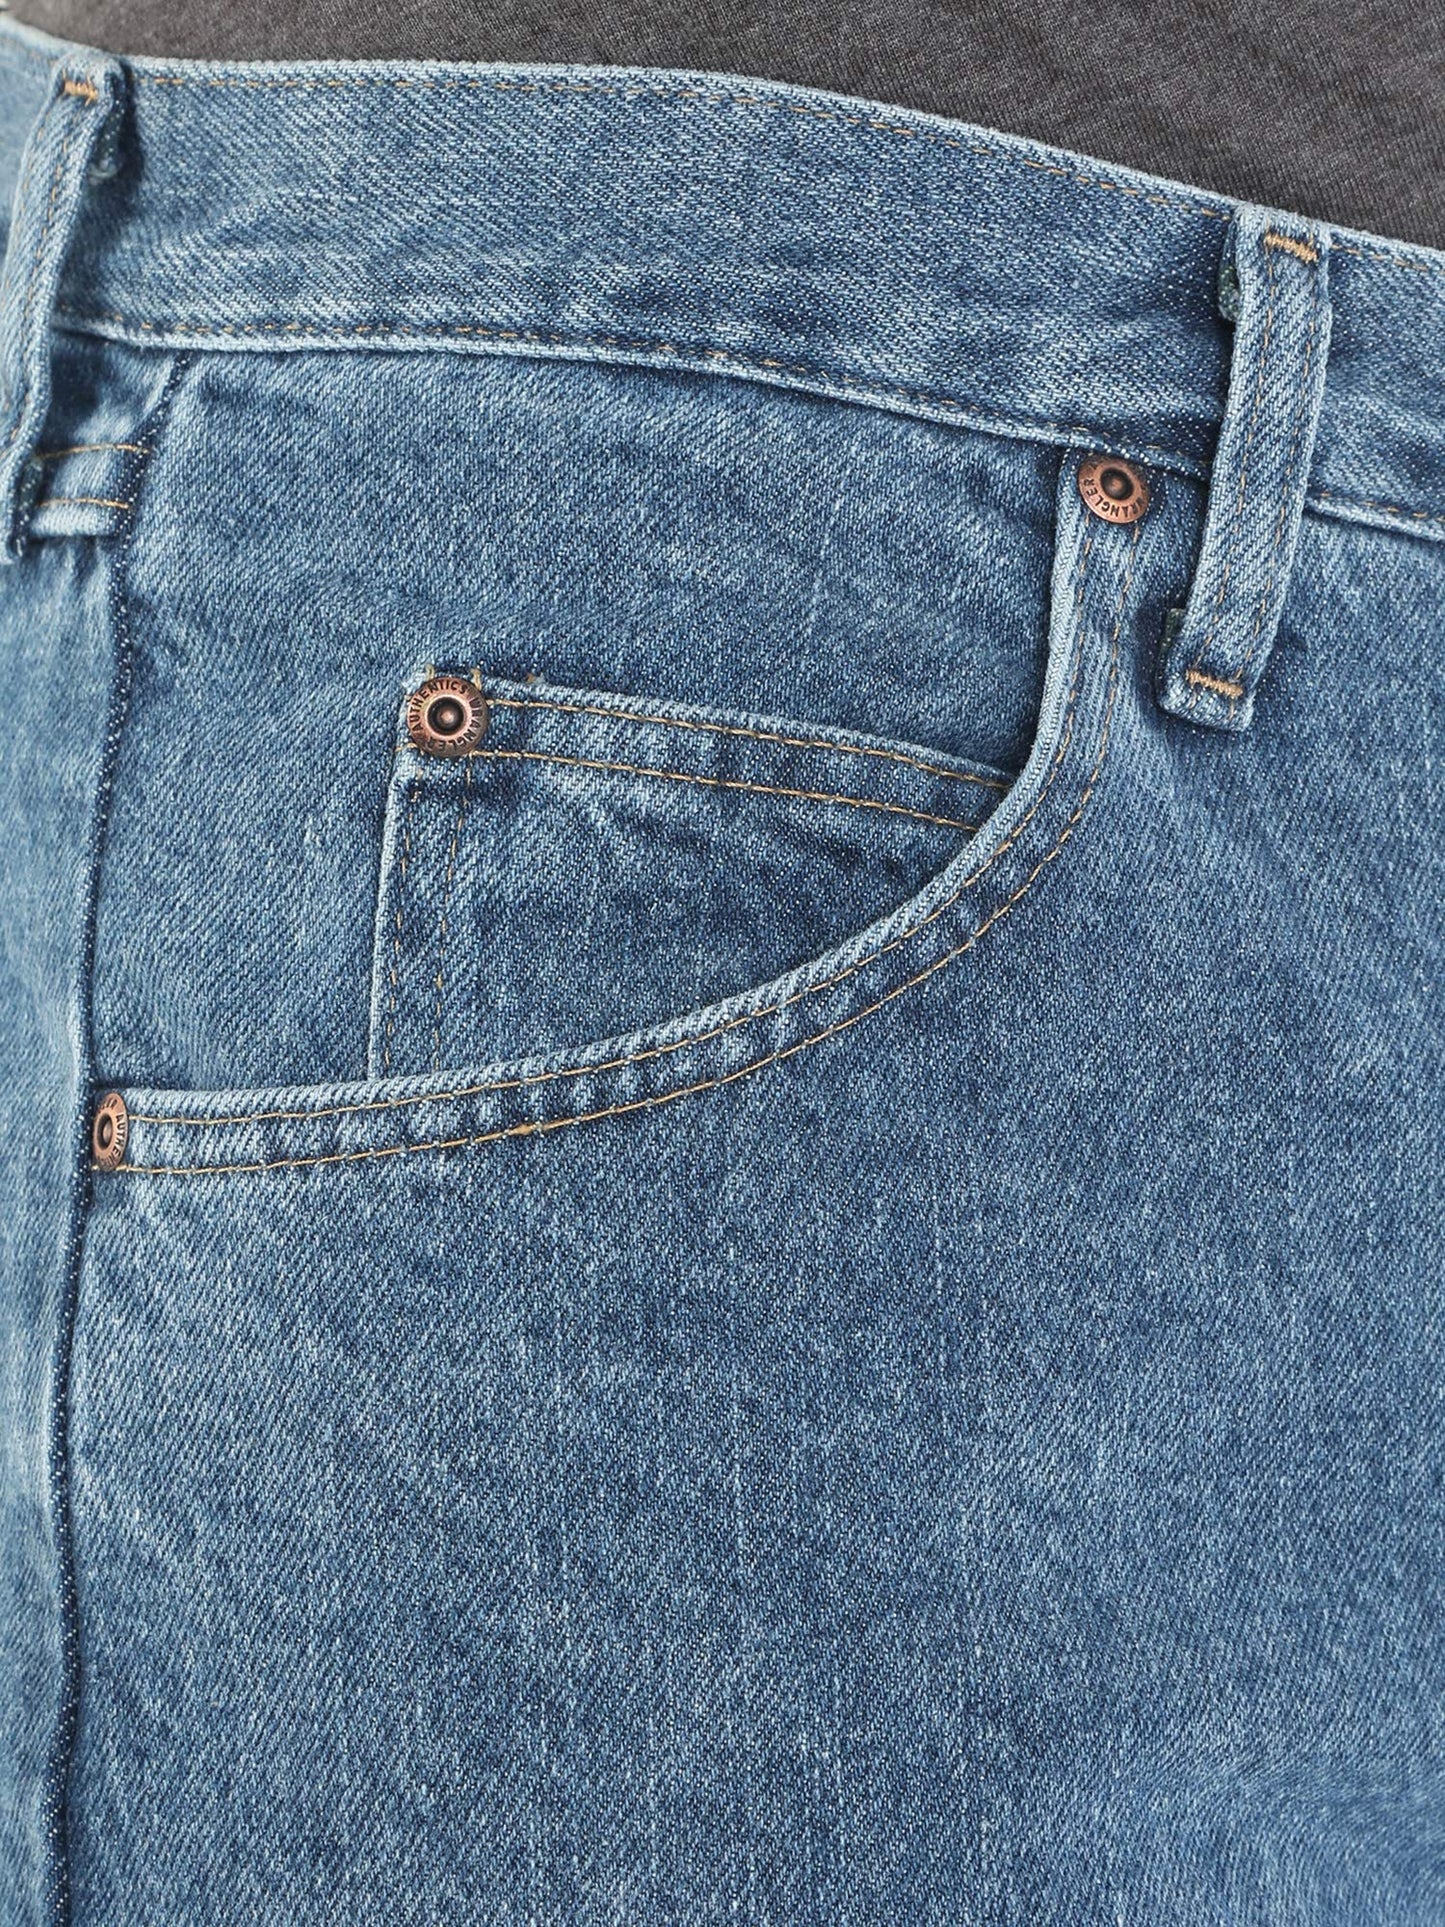 Wrangler Authentics Men's Classic 5-Pocket Relaxed Fit Cotton Jean, Vintage Stonewash, 35W x 34L